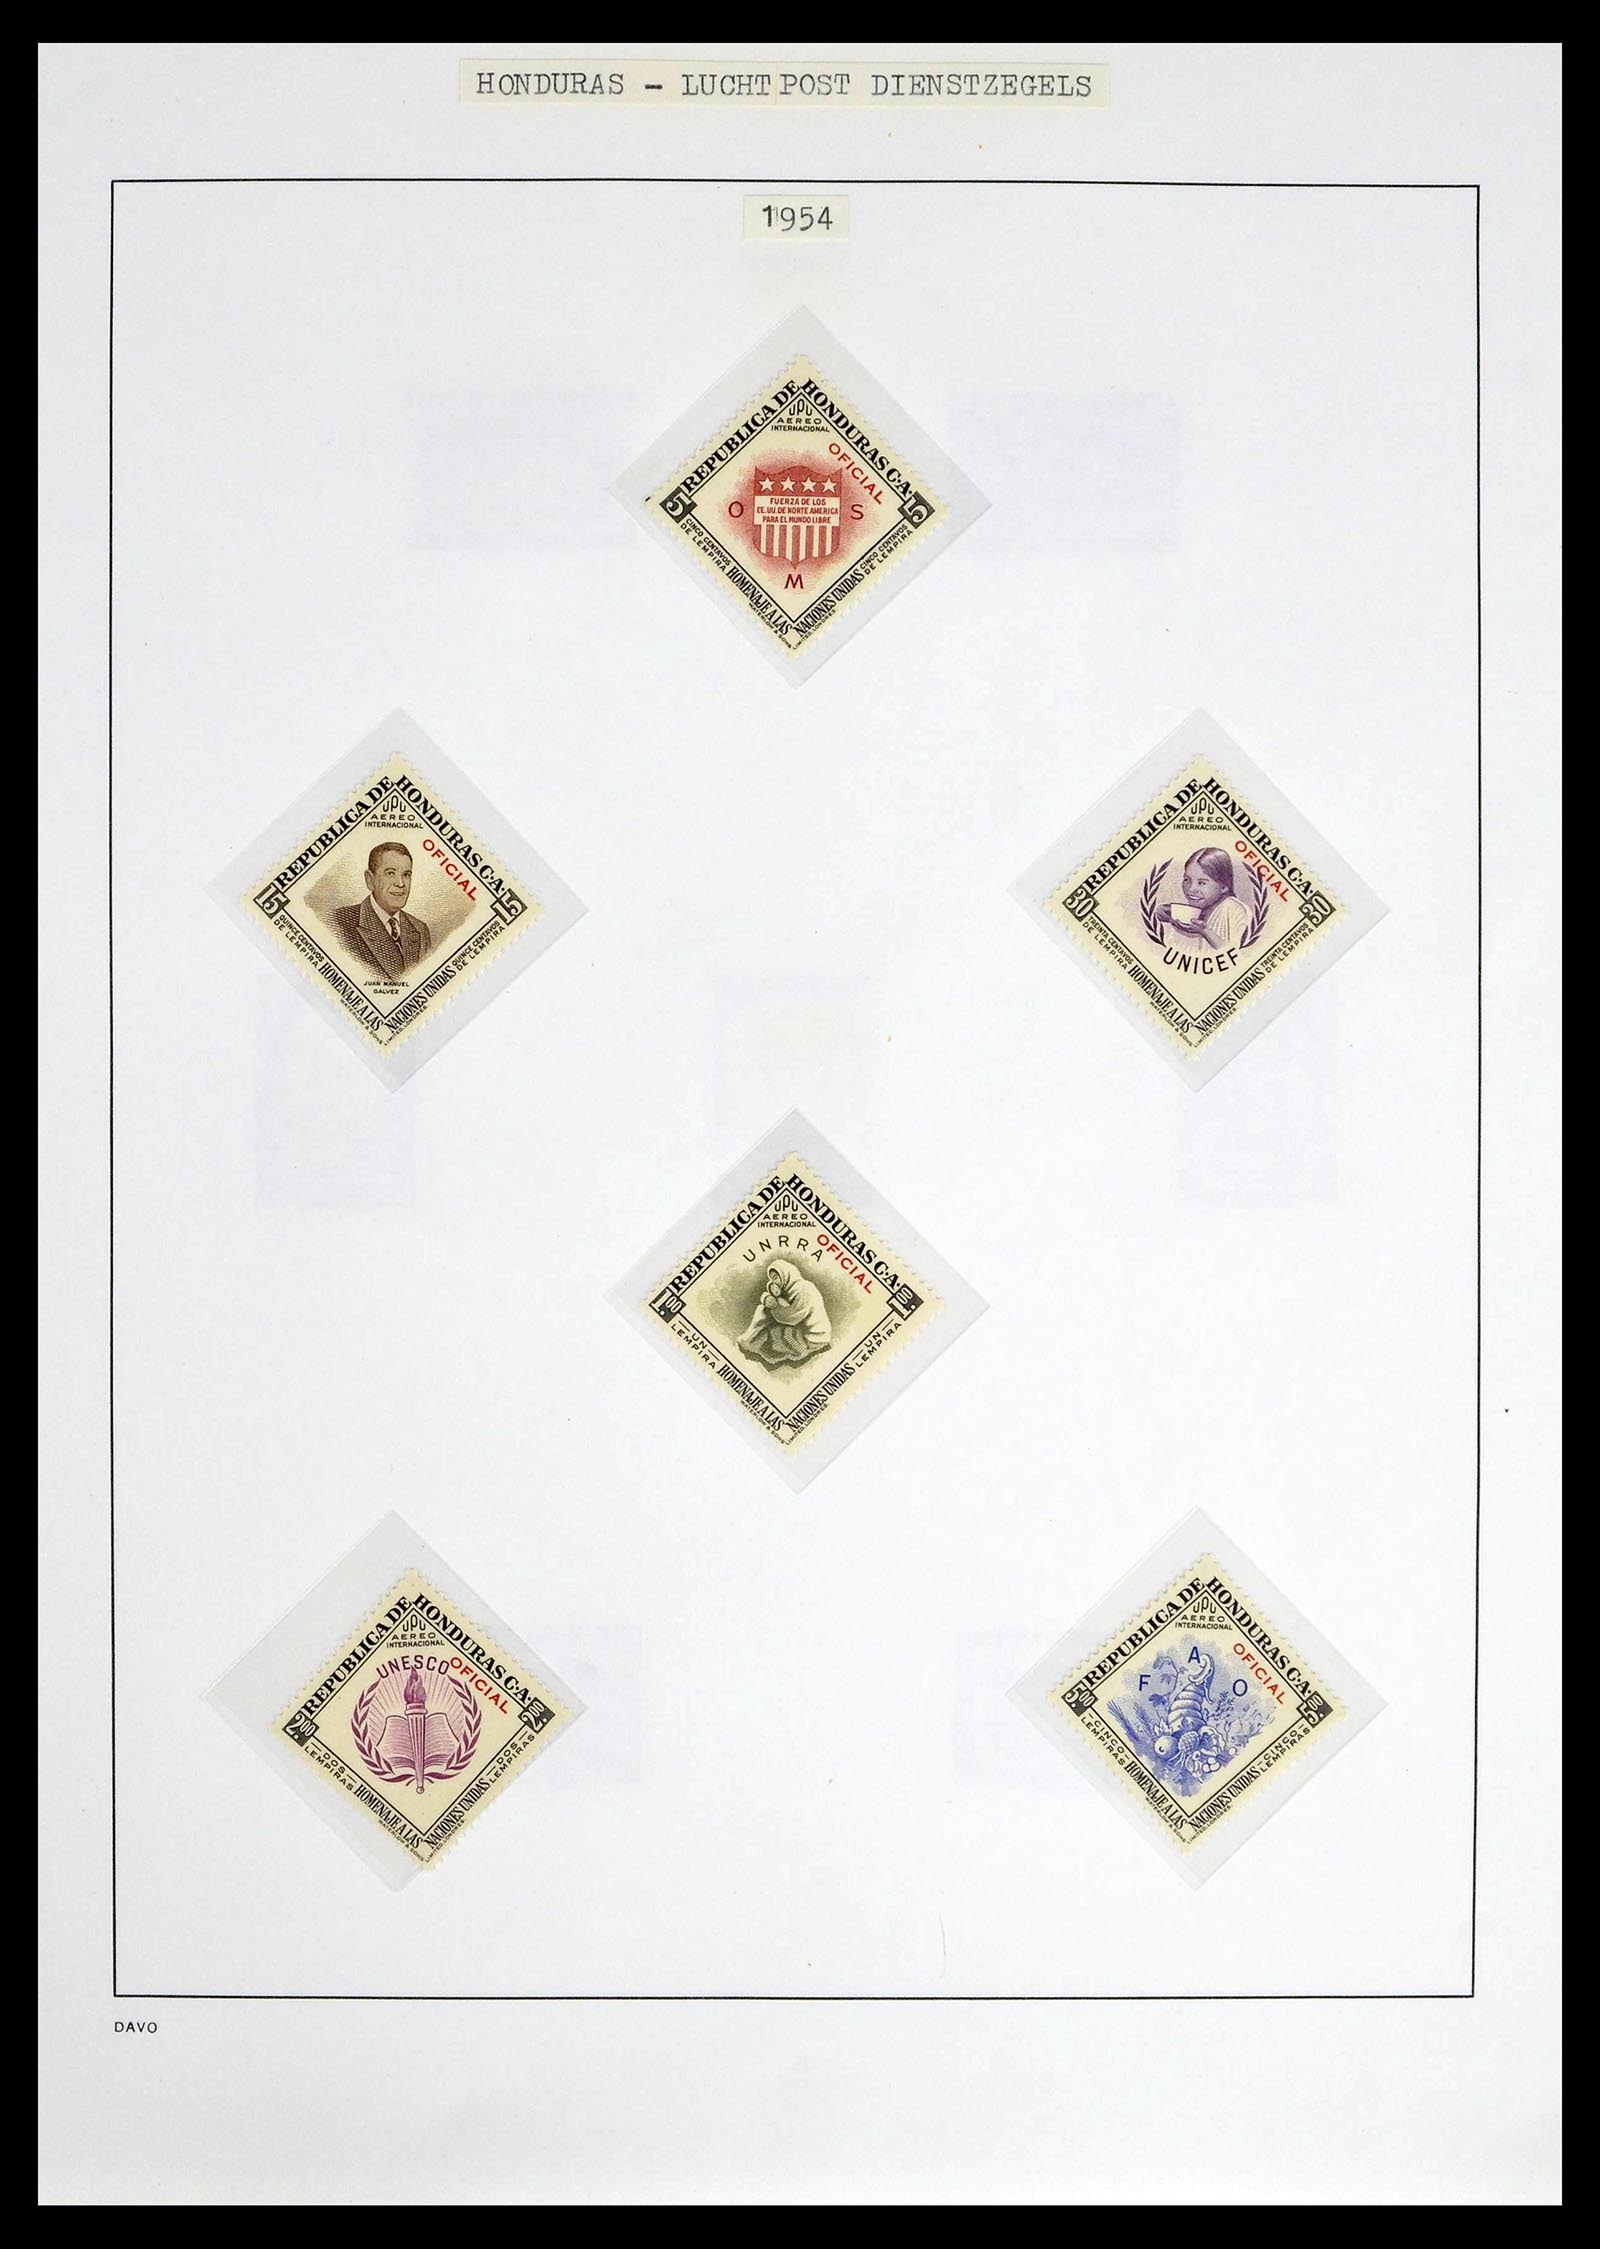 39404 0032 - Postzegelverzameling 39404 Honduras dienstzegels 1890-1974.